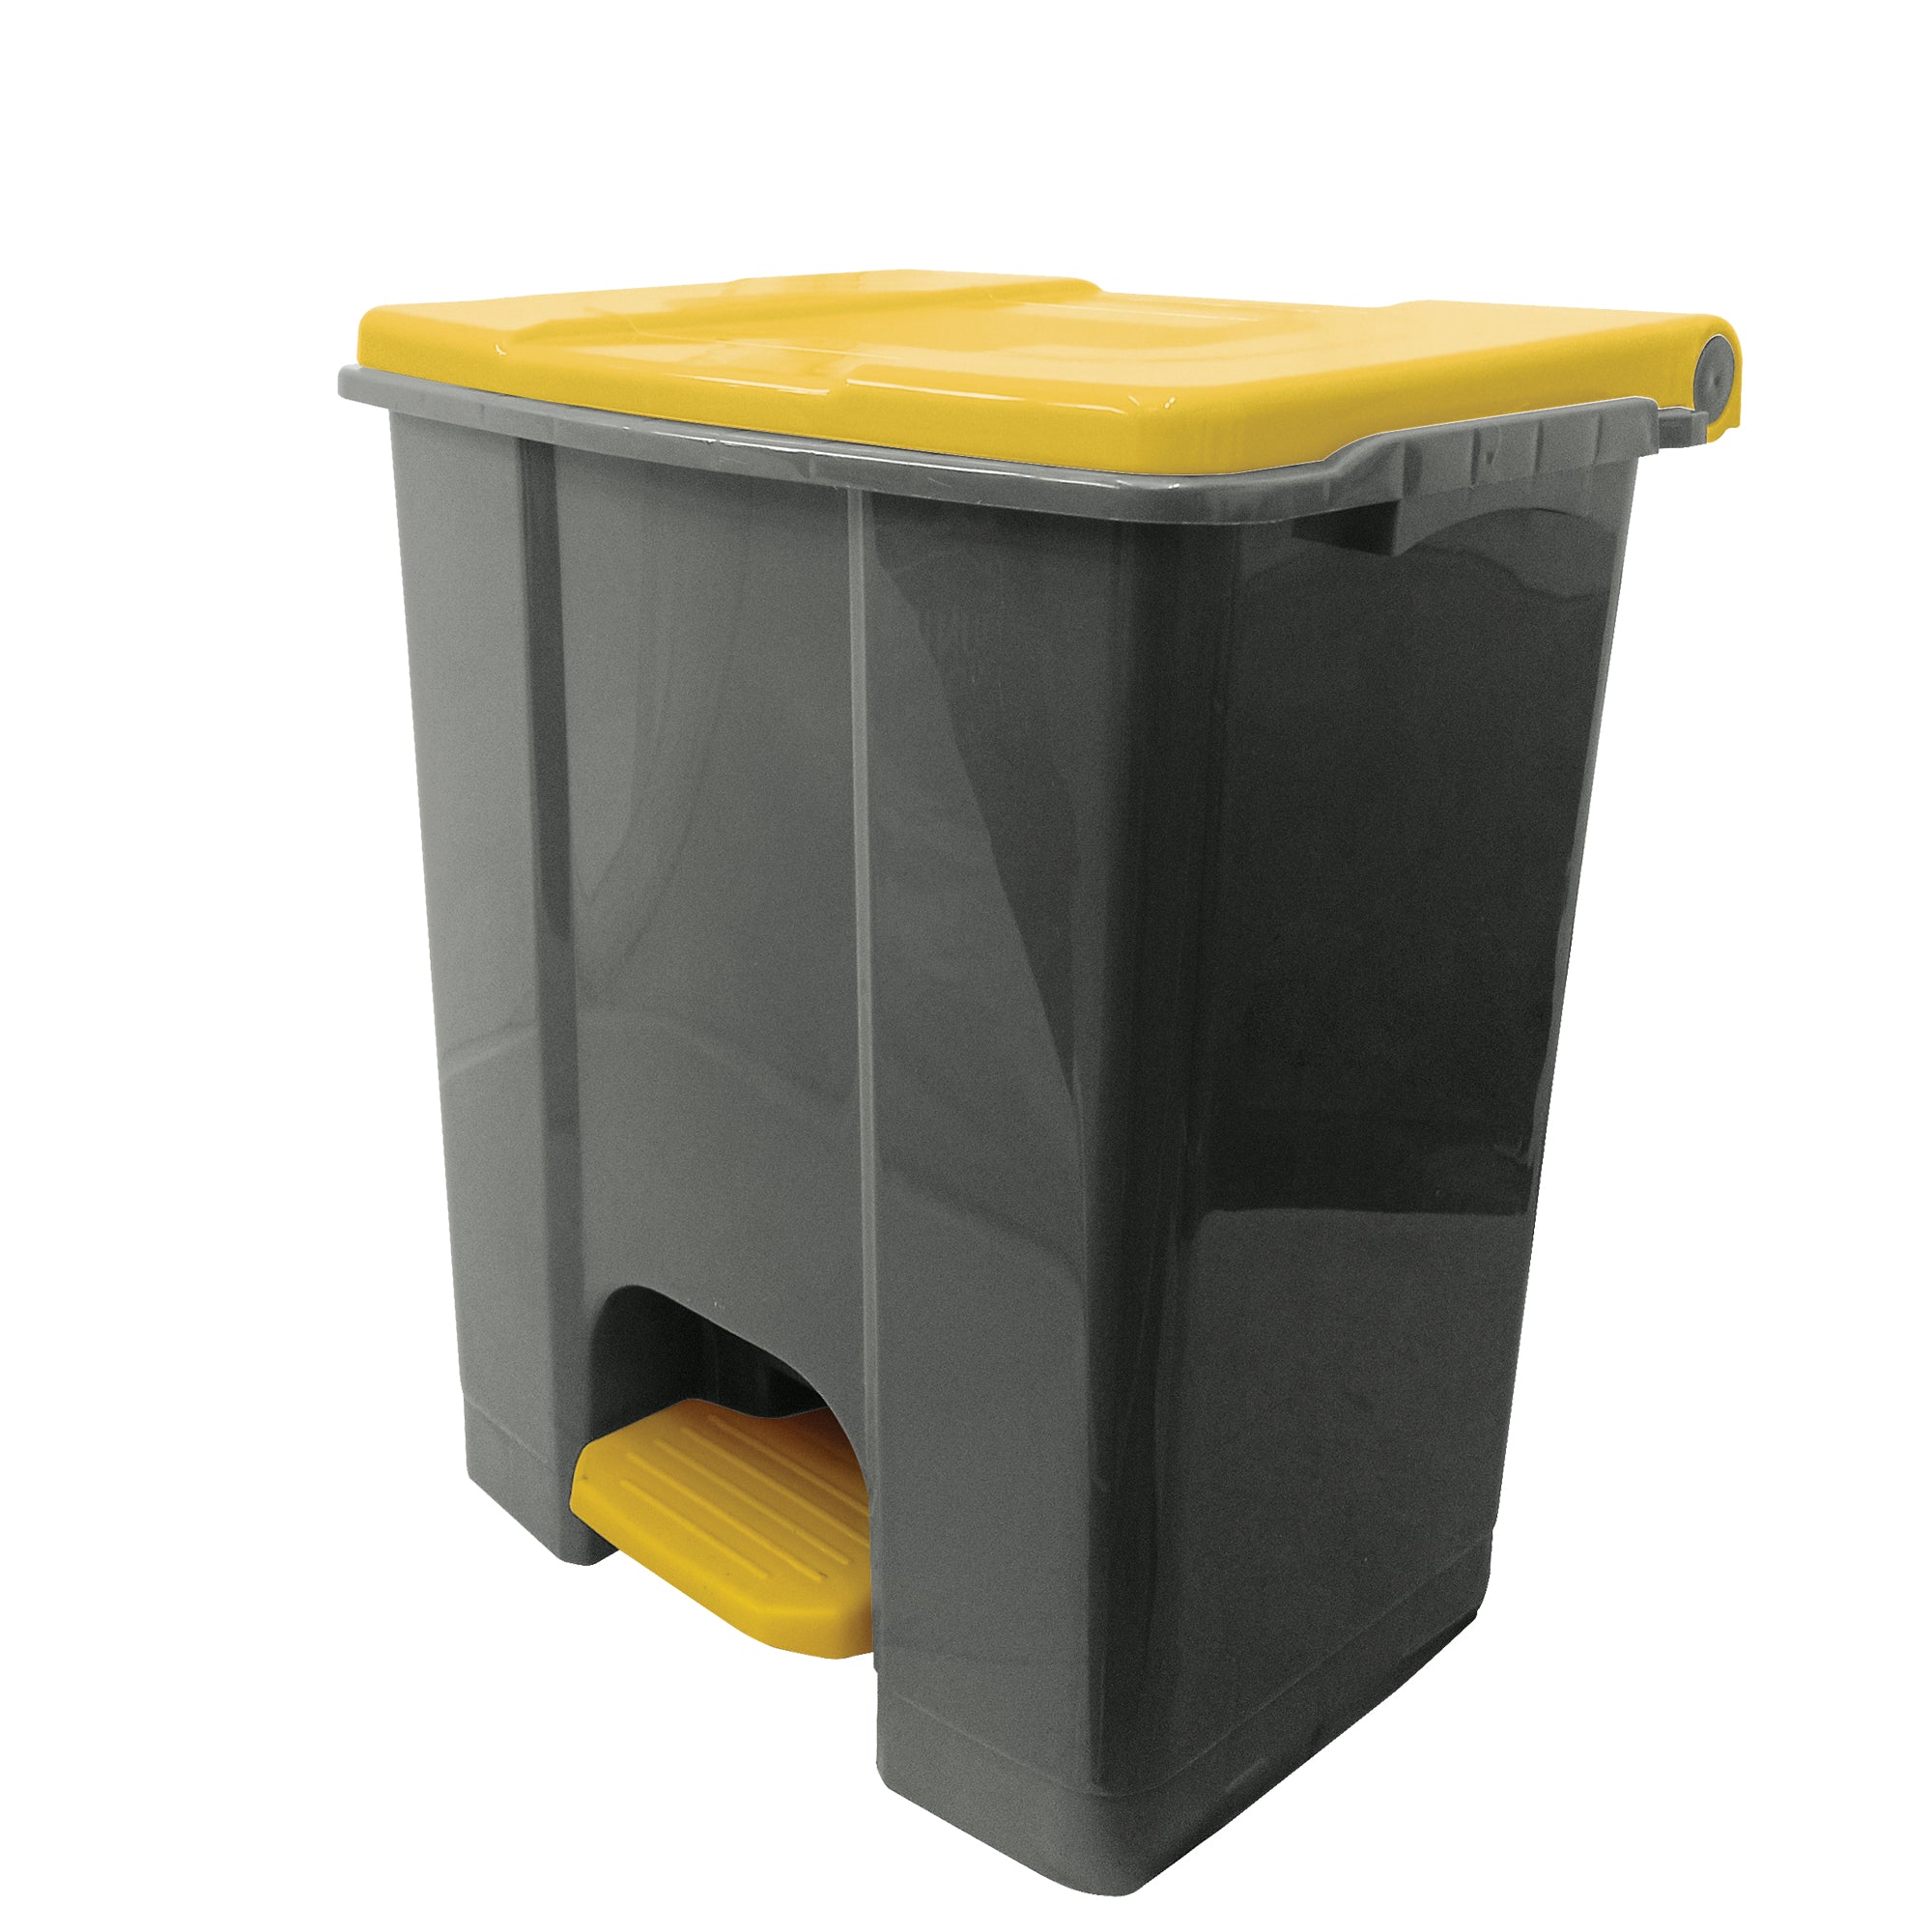 medialinternational-contenitore-mobile-pedale-plastica-riciclata-ecoconti-60lt-grigio-giallo